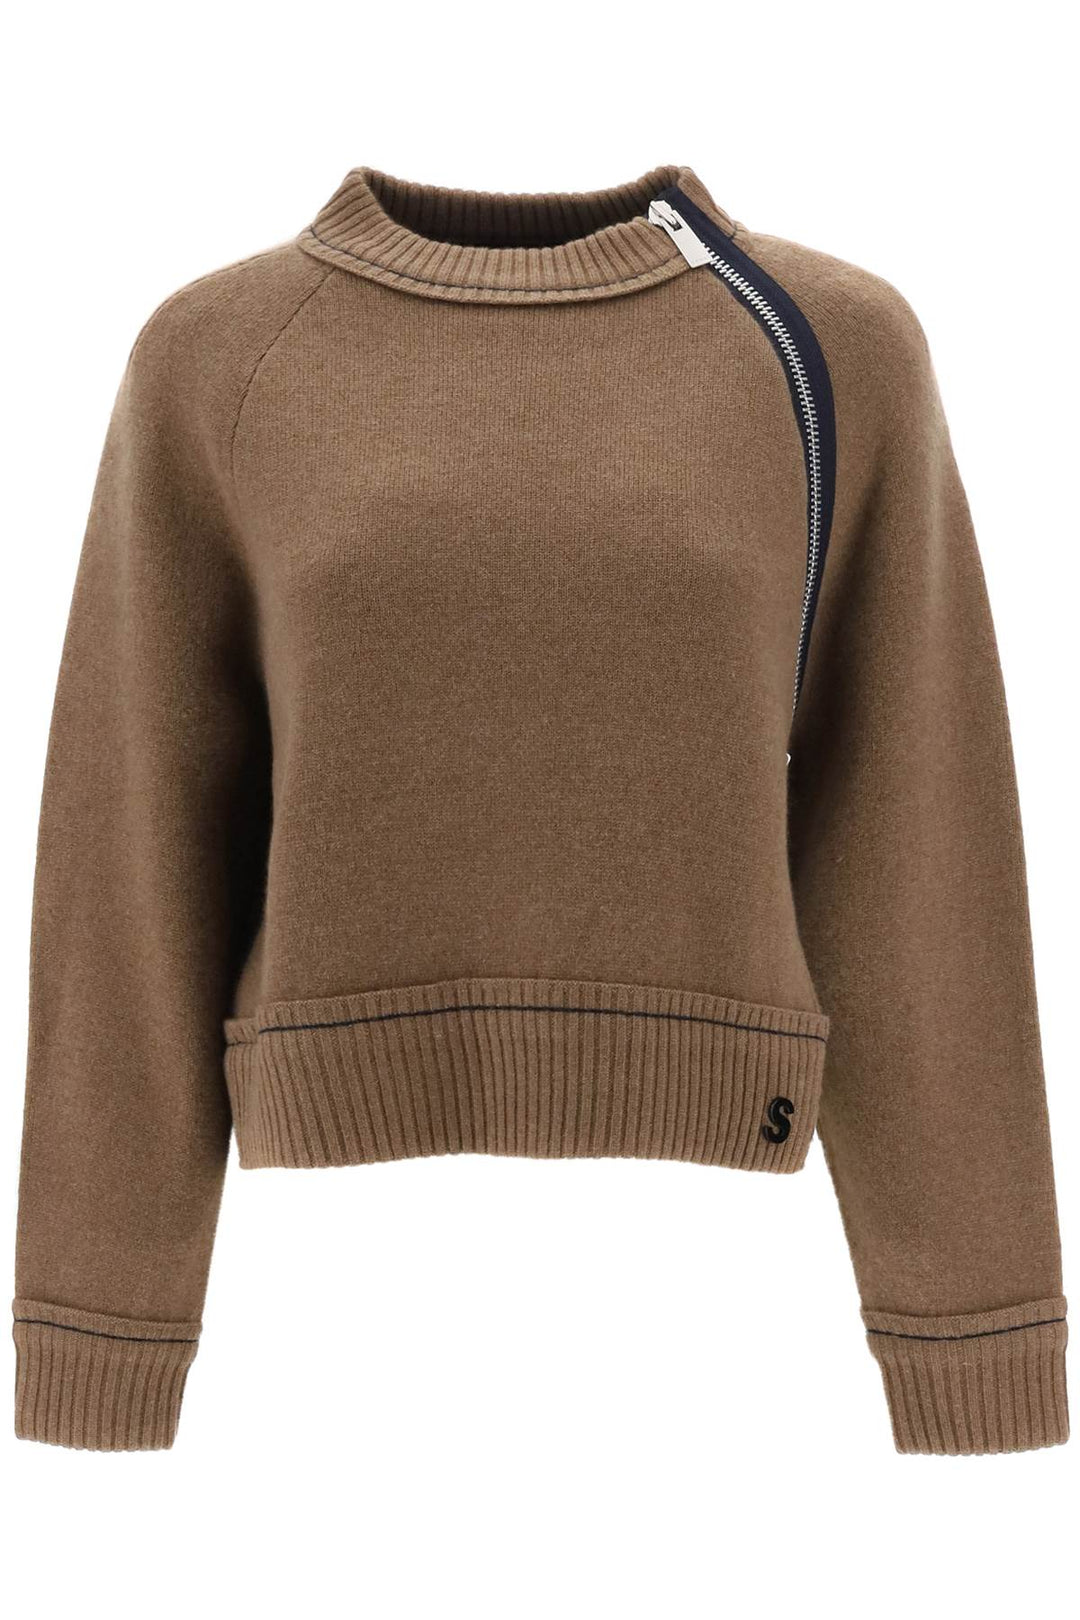 Sacai cashmere cotton sweater-0